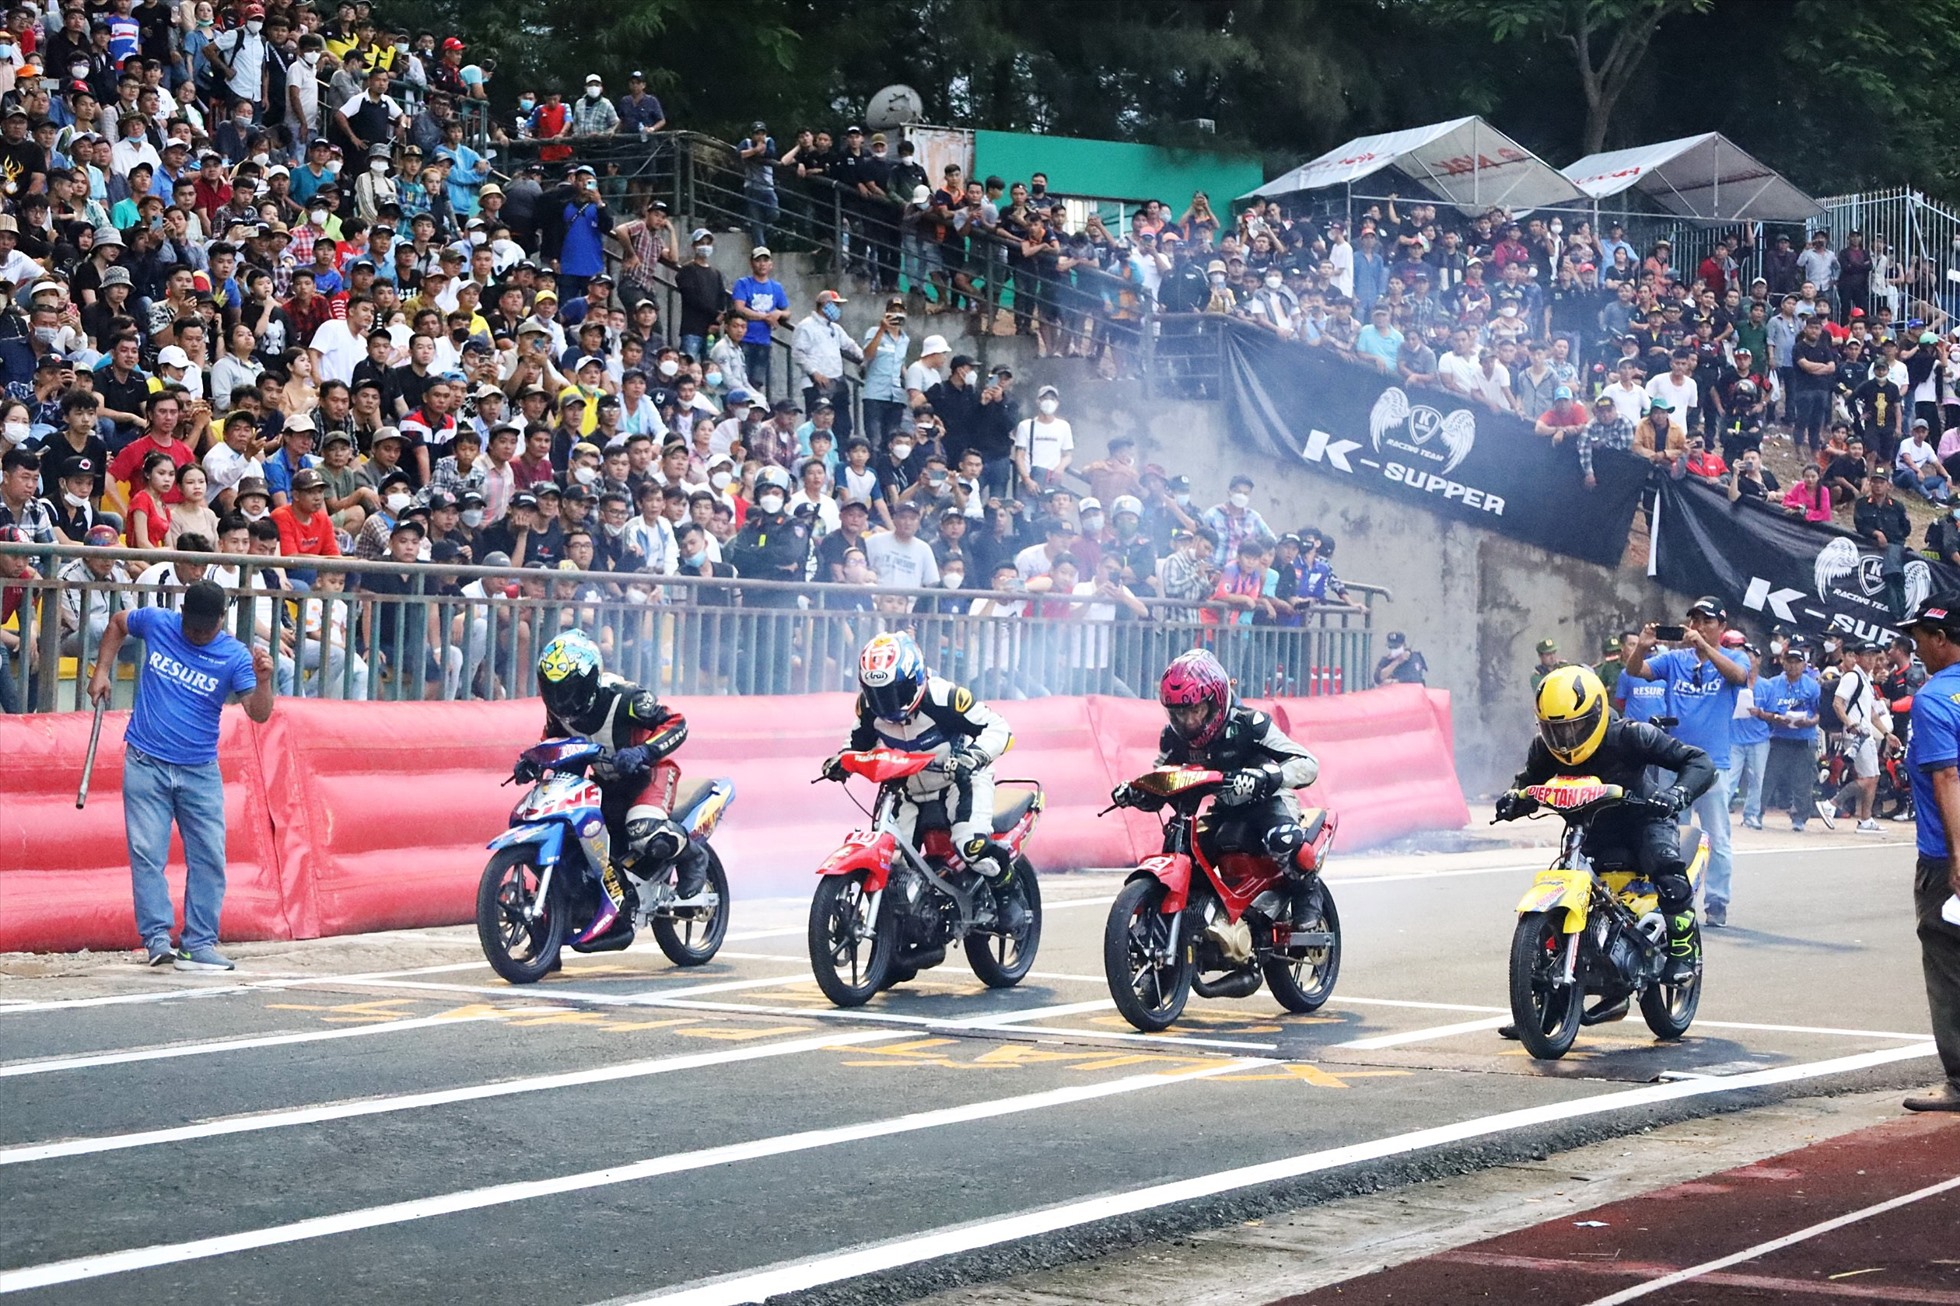 Chiều 2.9, Sở Văn hóa, Thể thao và Du lịch (VHTTDL) TP.Cần Thơ phối hợp với Liên đoàn Xe đạp - Mô tô thể thao Việt Nam tổ chức Giải đua xe mô tô toàn quốc “Tranh cúp Liên đoàn Xe đạp - Mô tô thể thao năm 2022” tại sân vận động Cần Thơ.